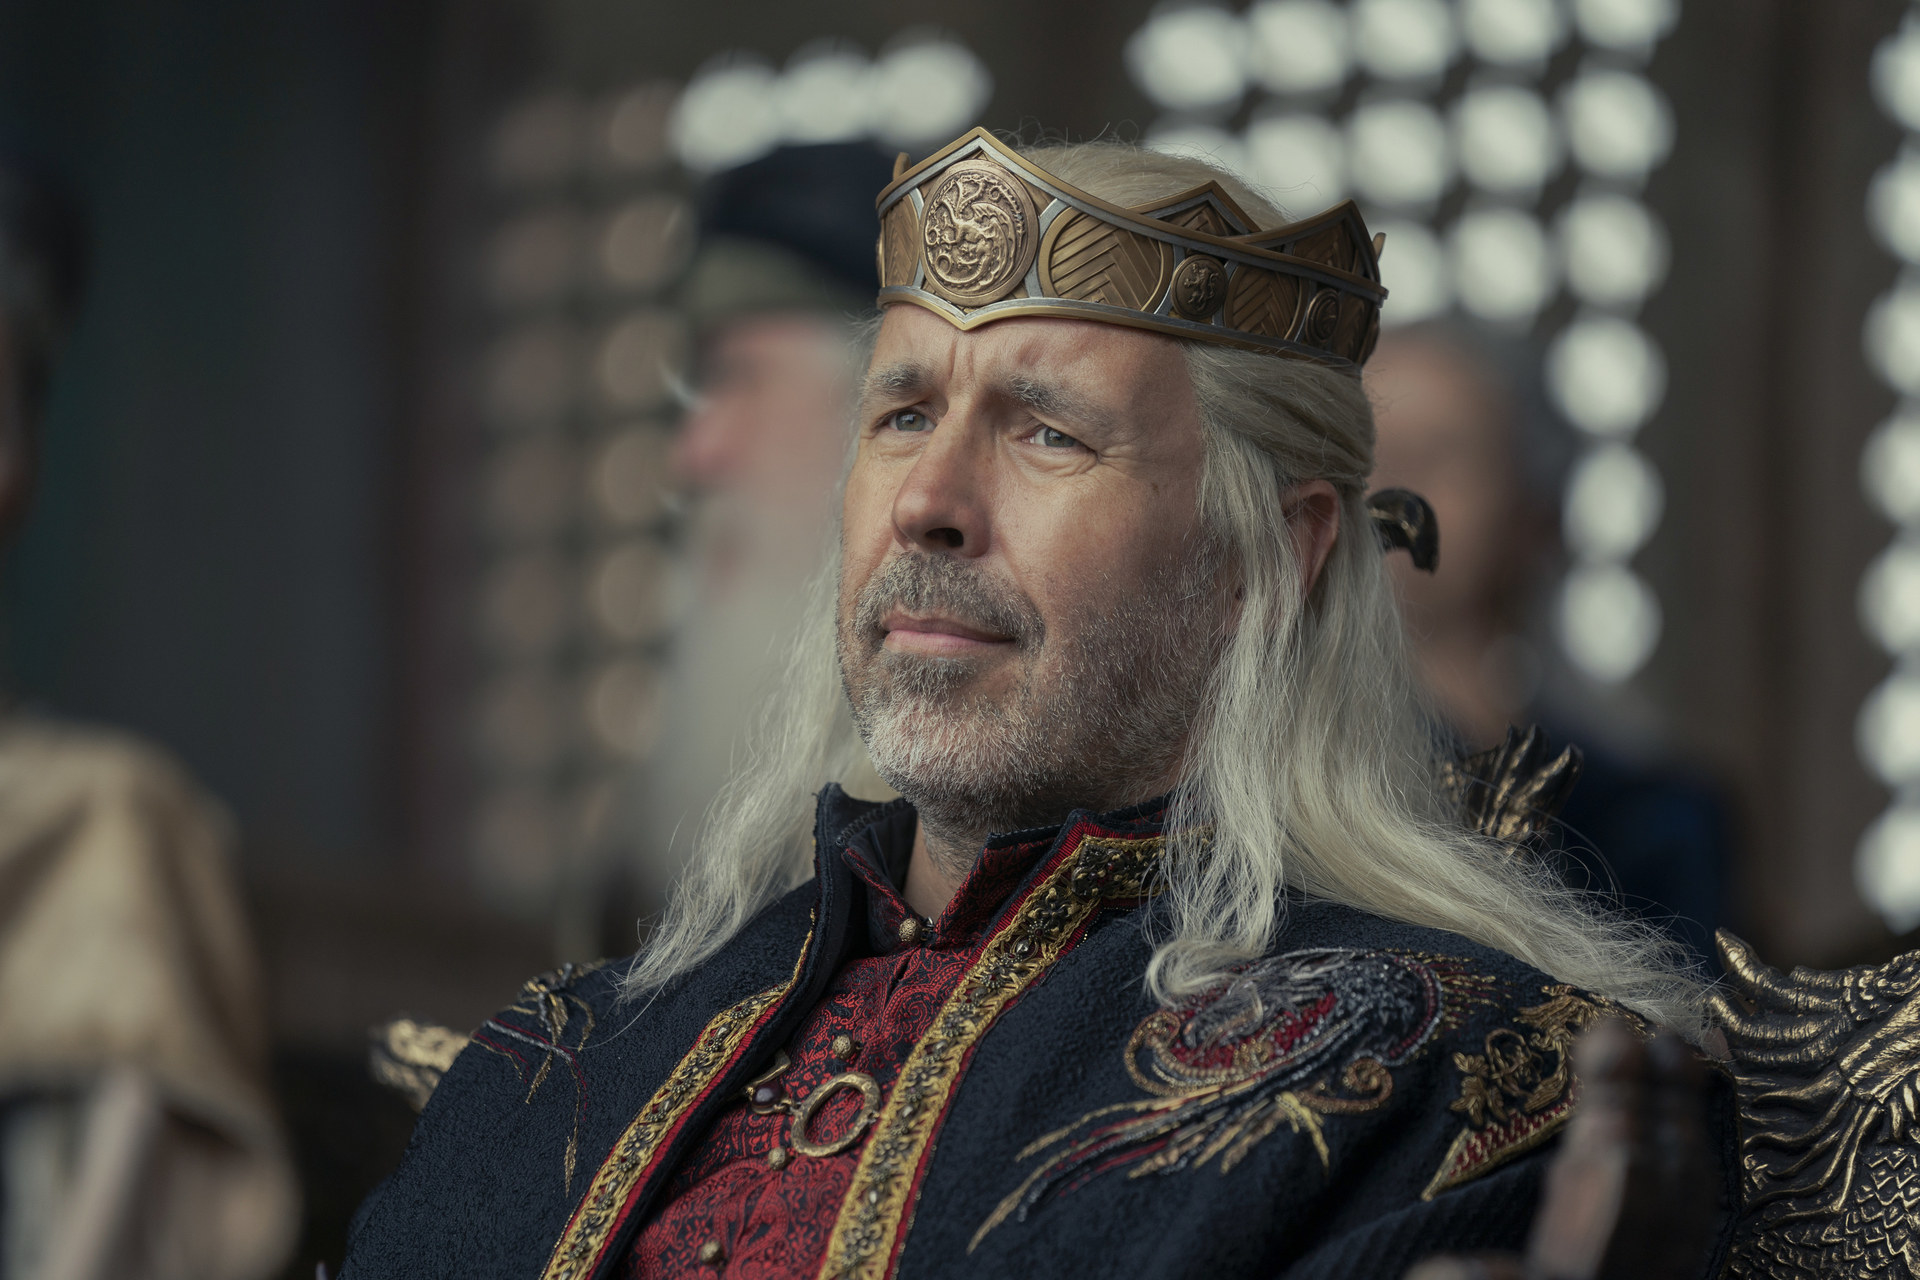 Viserys Targaryen frowns while wearing his crown